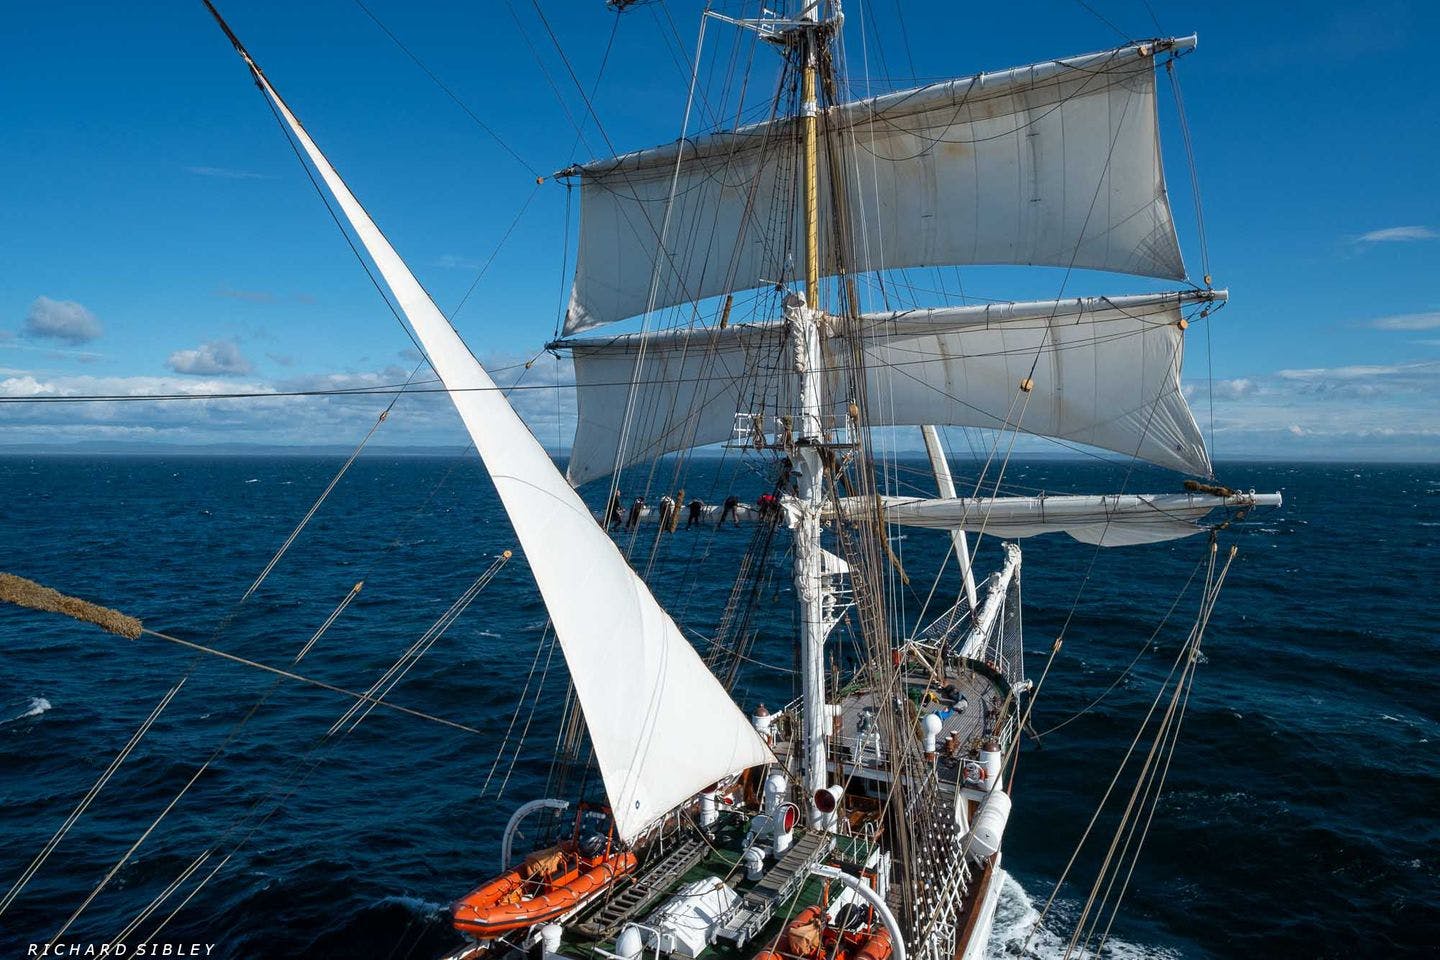 sailing ship at sea